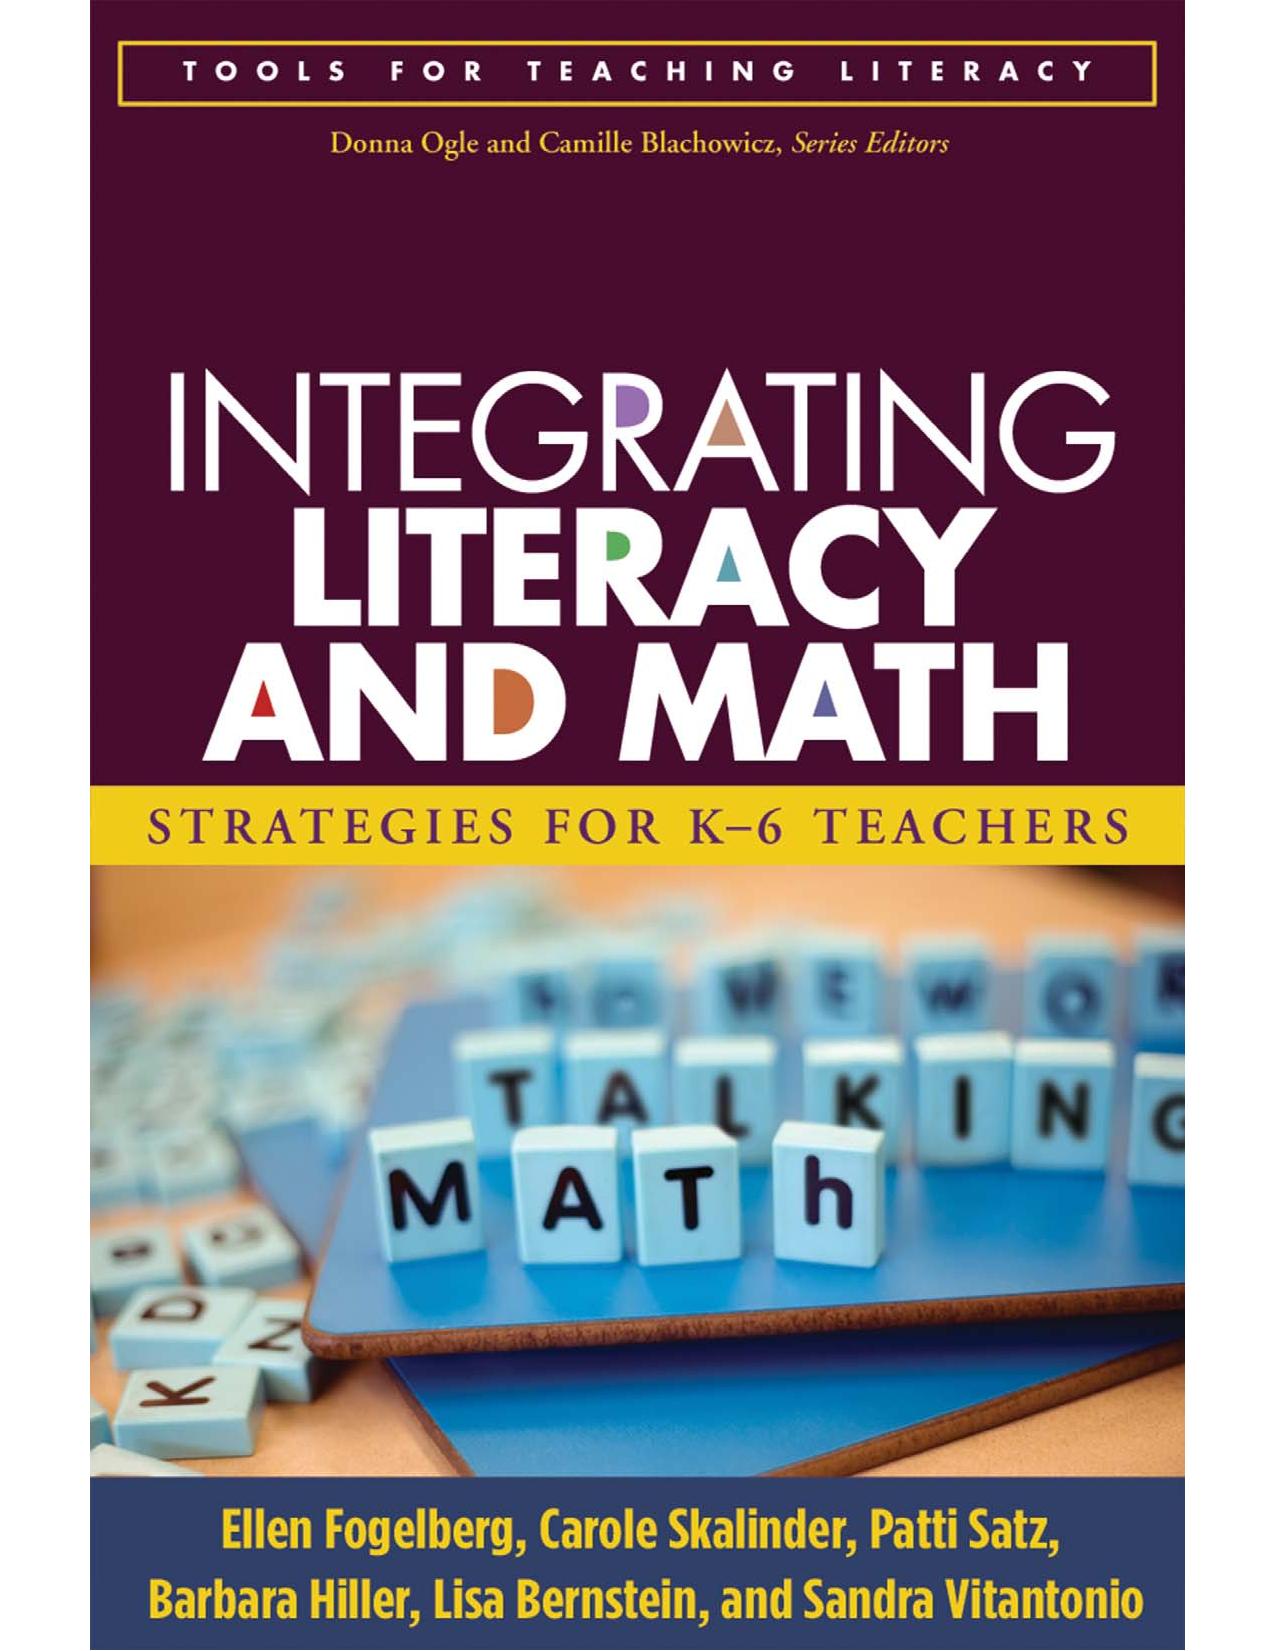 Integrating Literacy and Math : Strategies for K-6 Teachers by Ellen Fogelberg; Carole Skalinder; Patti Satz; Barbara Hiller; Lisa Bernstein; Sandra Vitantonio